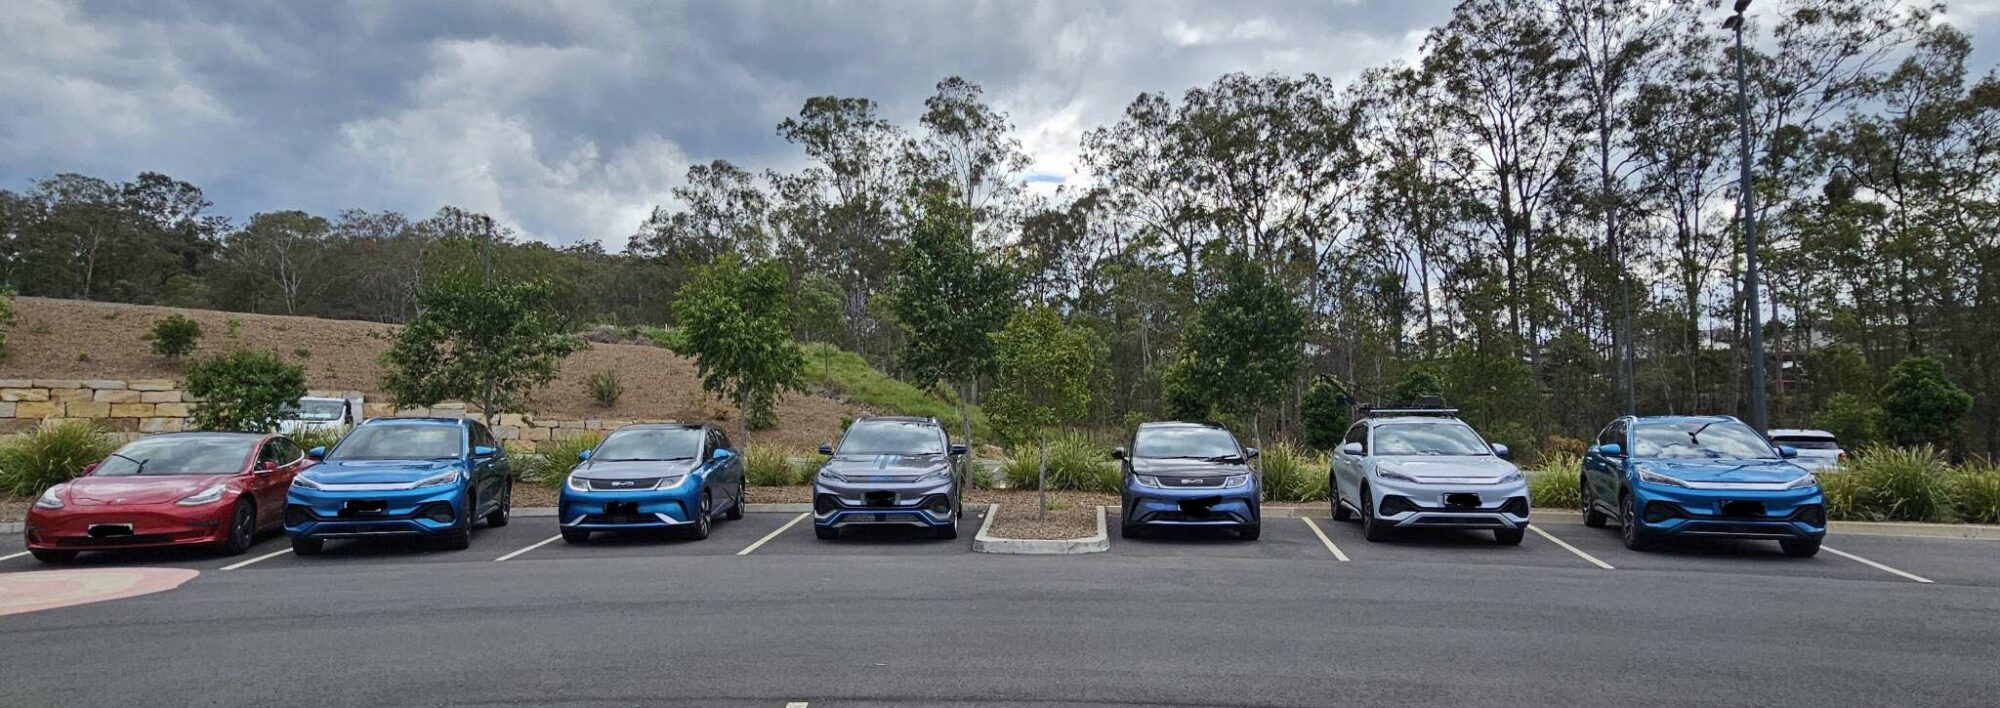 8 月份澳大利亚电动汽车渗透率保持在 XNUMX% 左右 - CleanTechnica